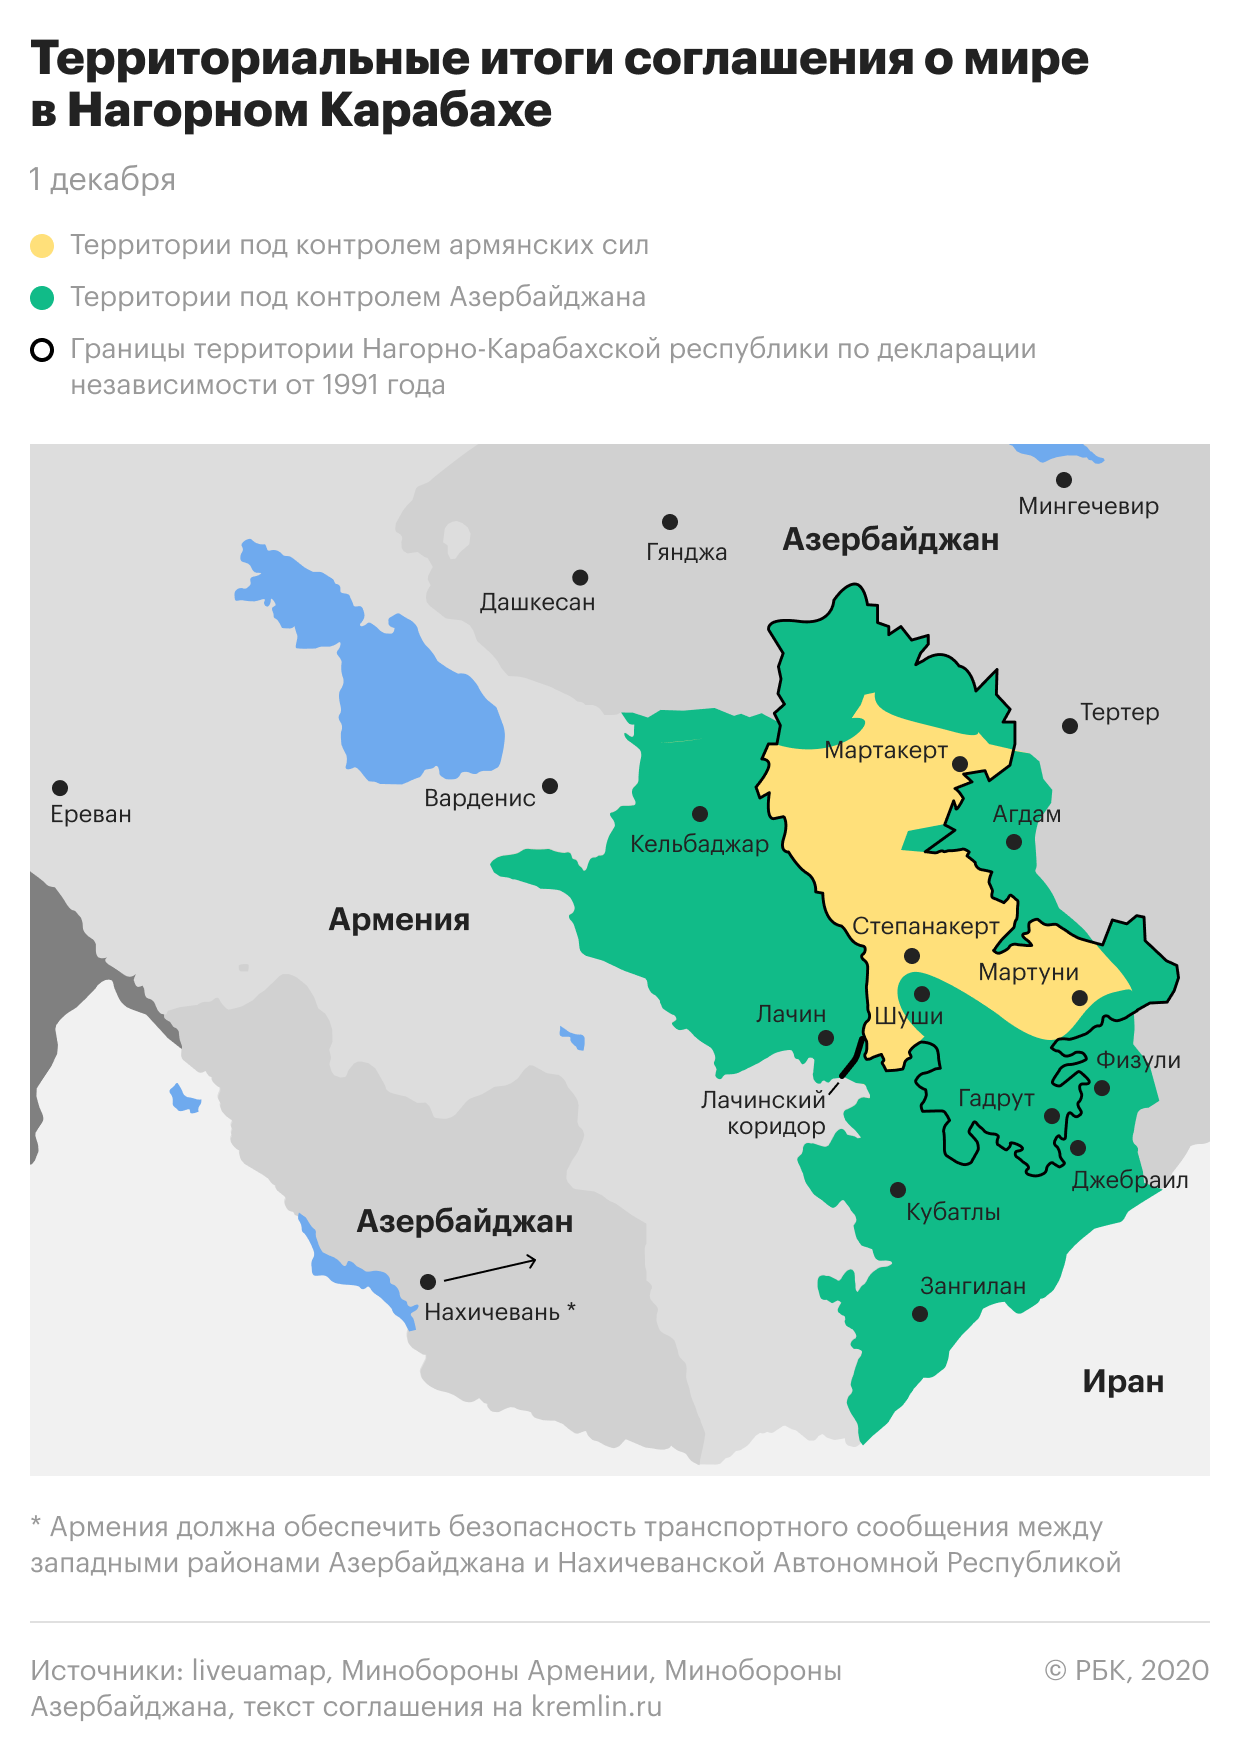 Территориальные итоги соглашения о мире в Нагорном Карабахе. Карта